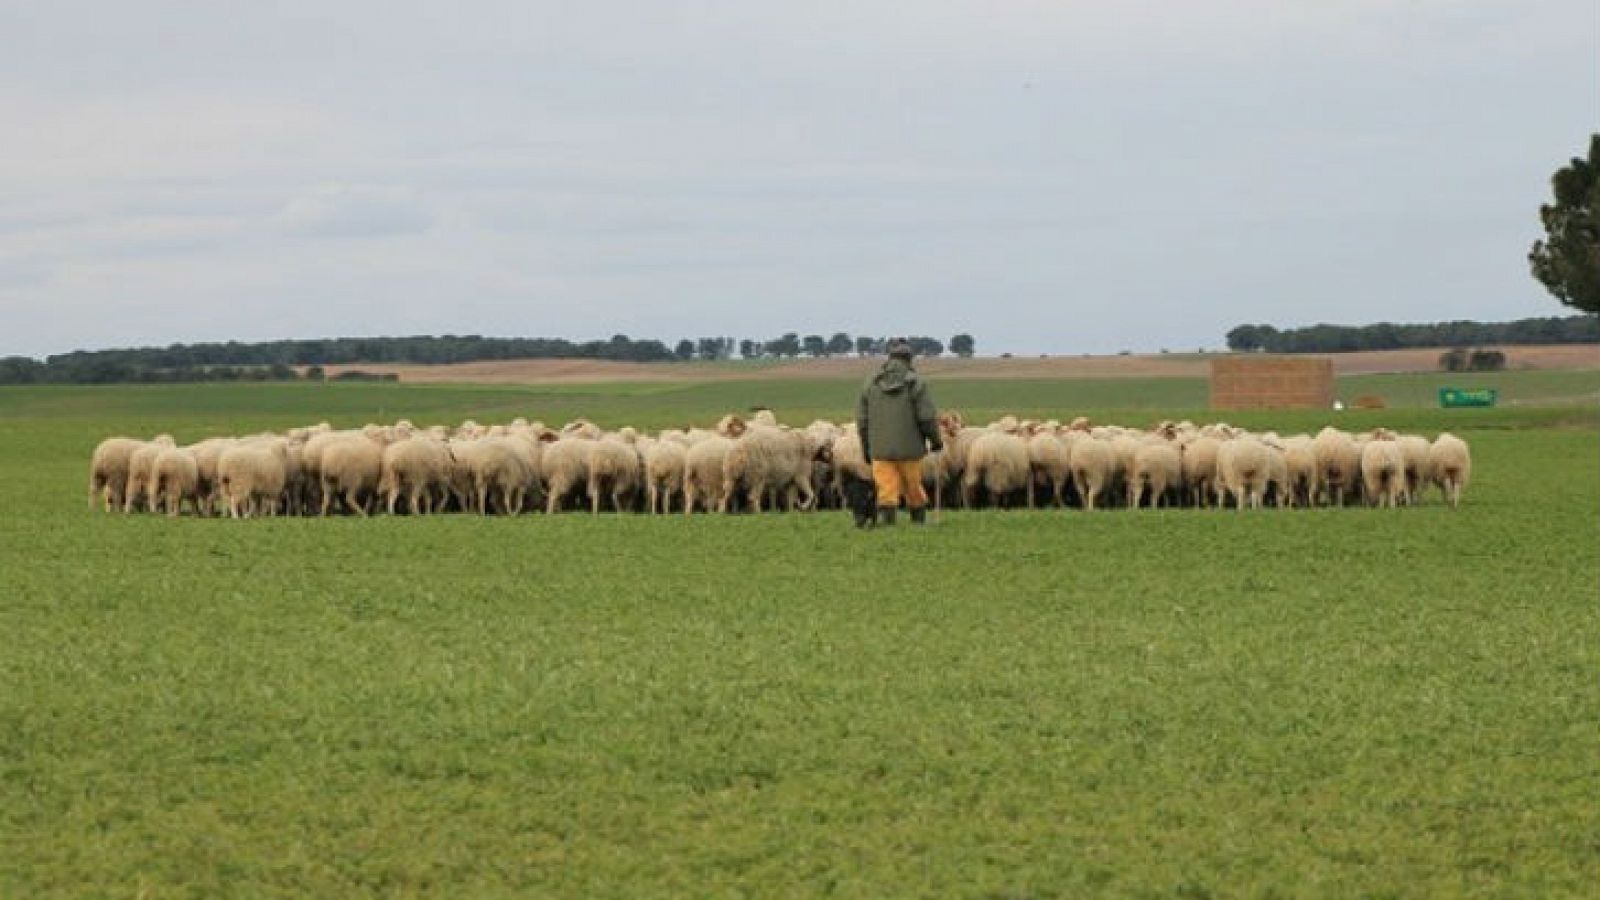 El mundo de la carne - Ganadería sostenible en ovino y caprino - 10/06/17 - Escuchar ahora 